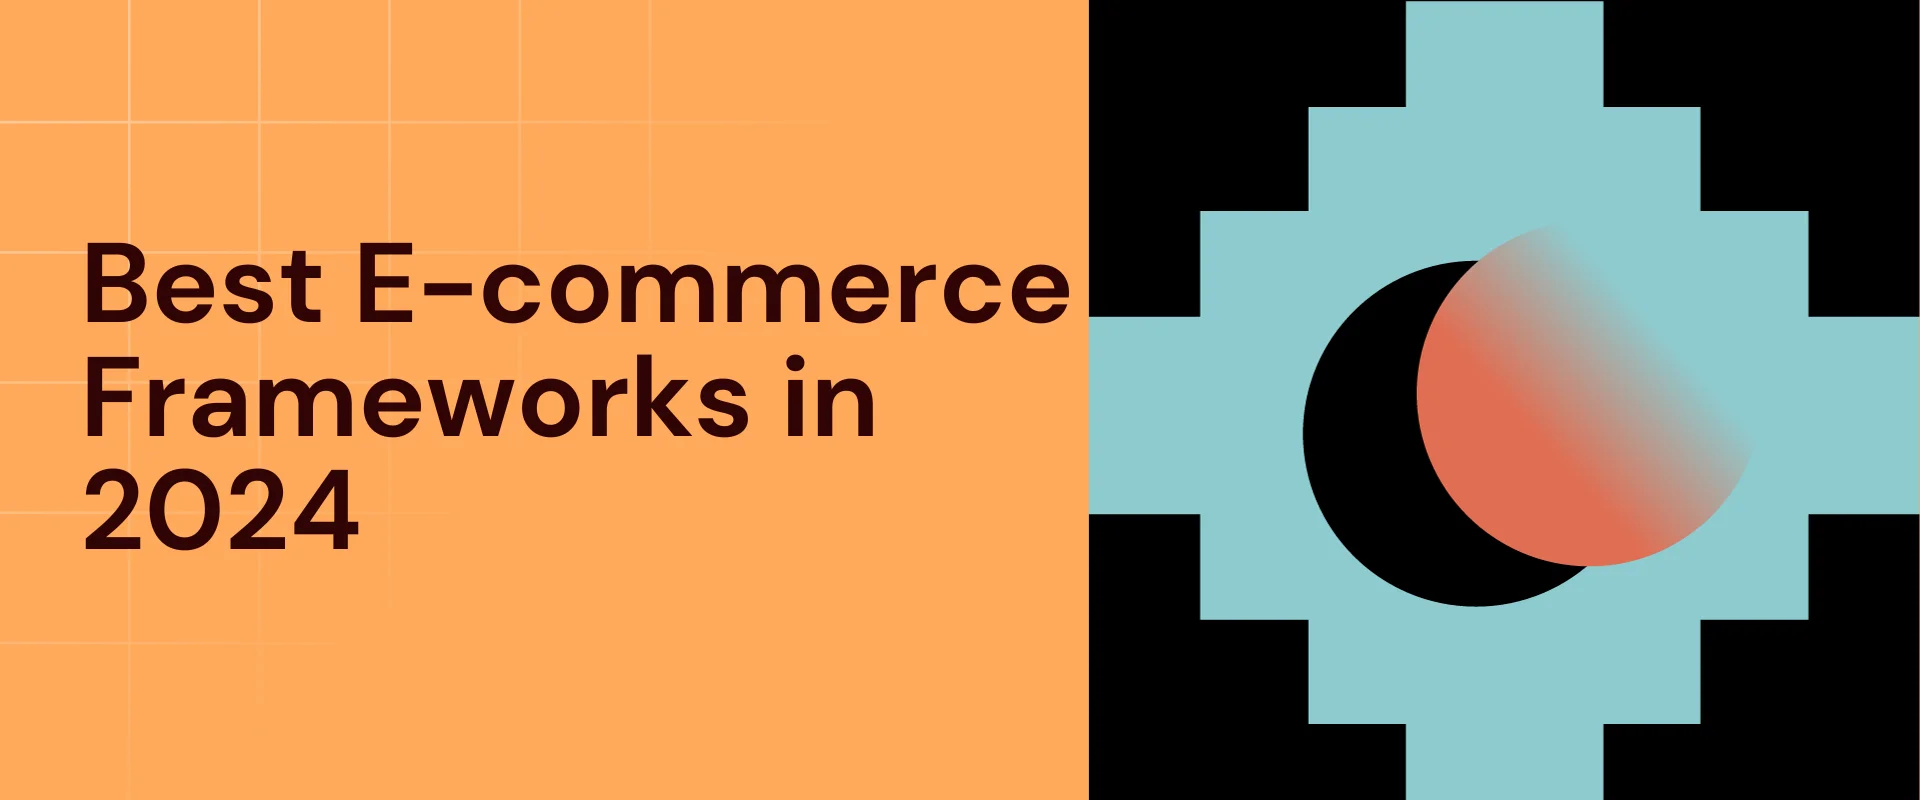 Best E-commerce Frameworks